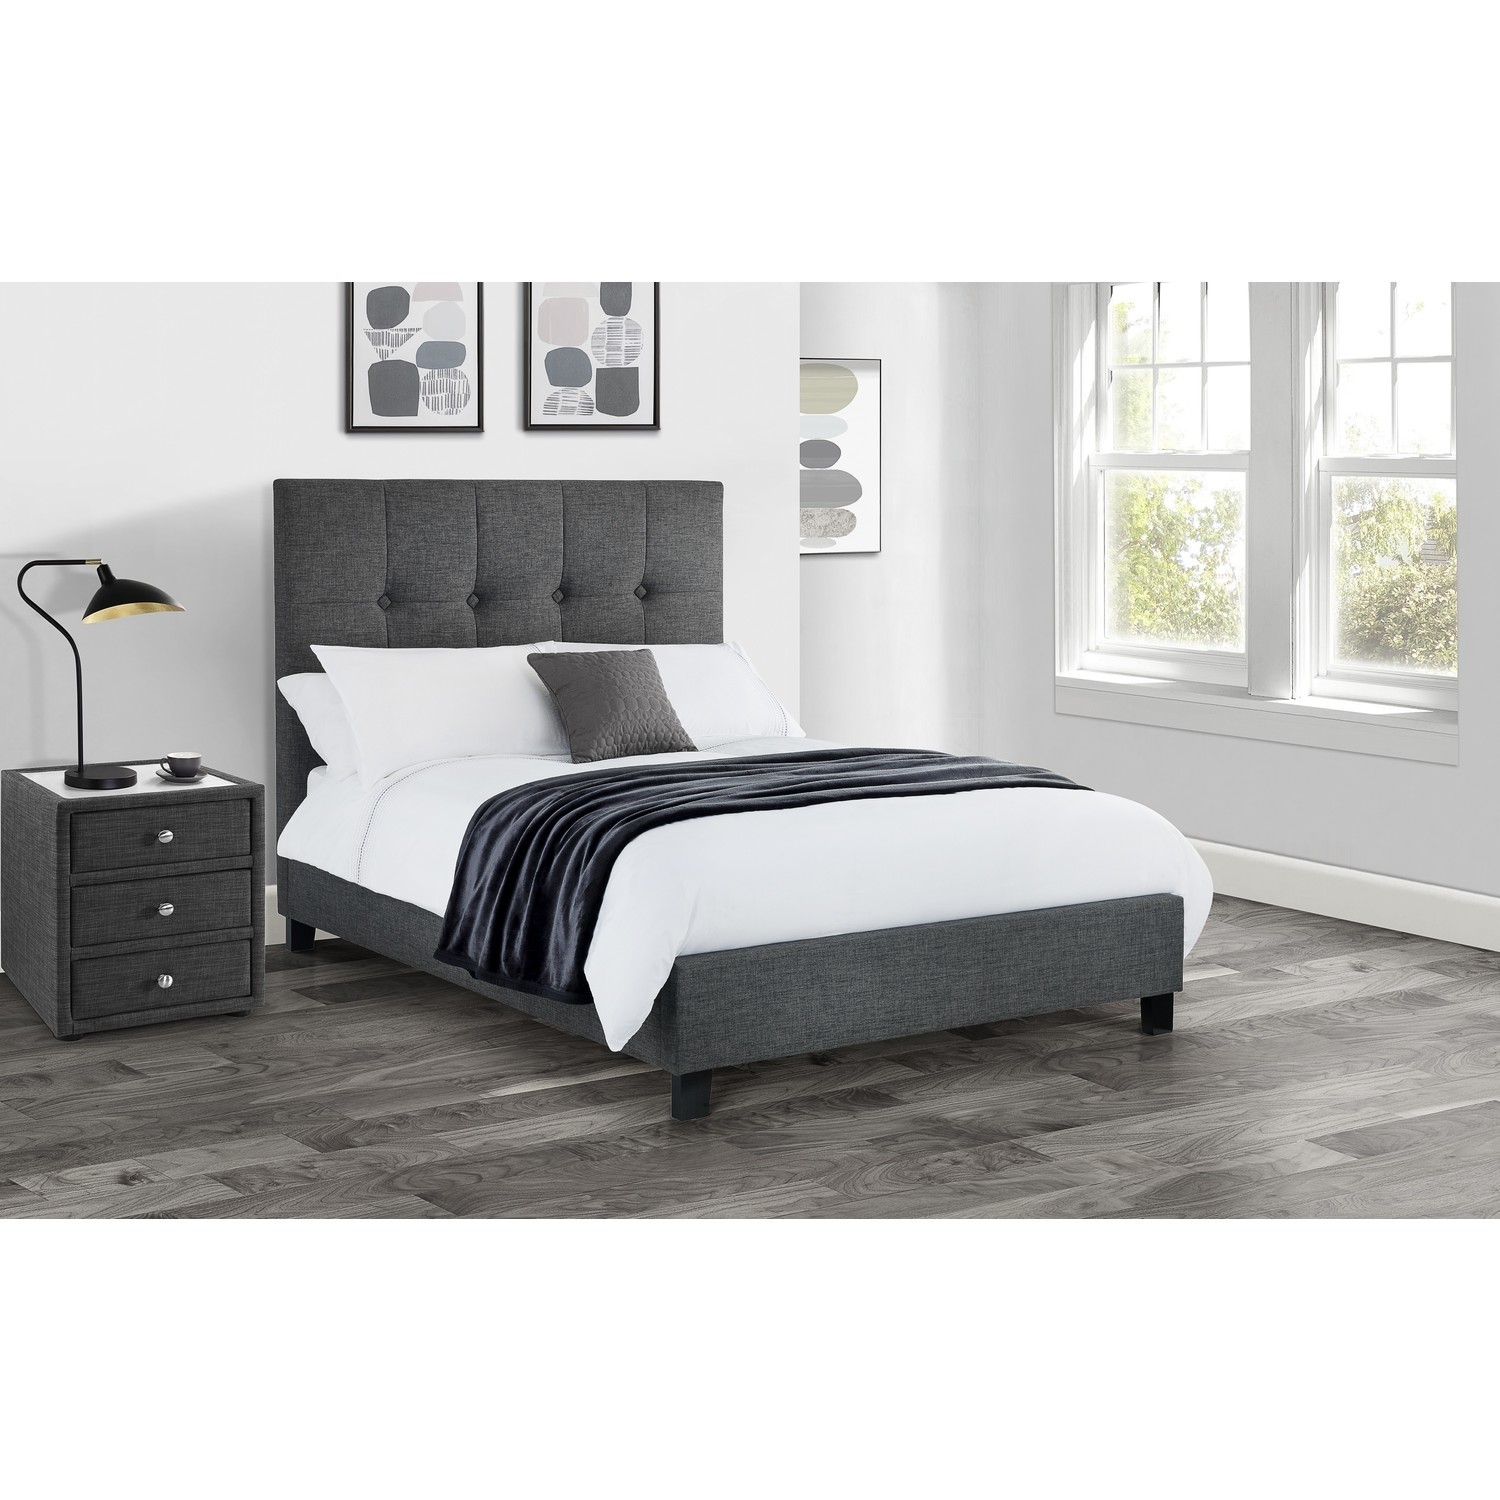 Dark Grey Super King Size Bed Frame, High Headboard King Size Bed Frame